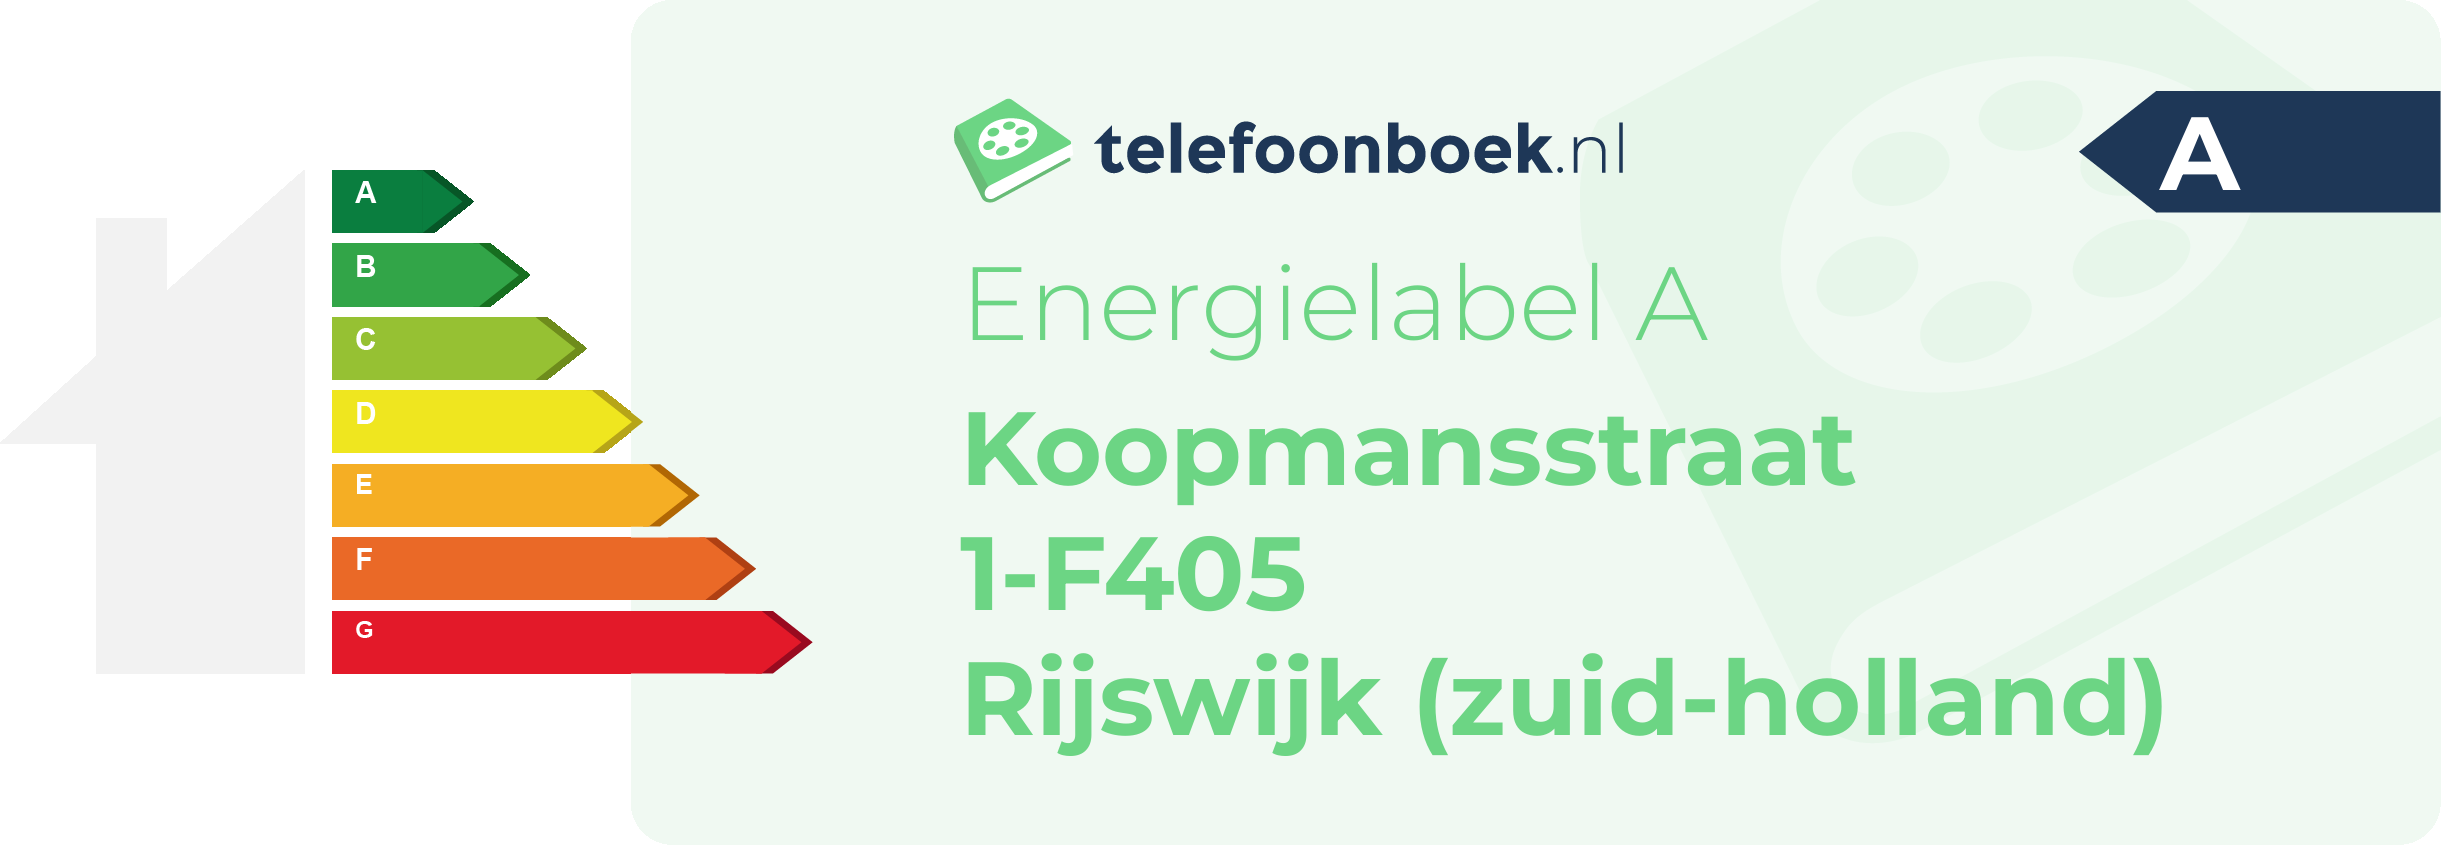 Energielabel Koopmansstraat 1-F405 Rijswijk (Zuid-Holland)